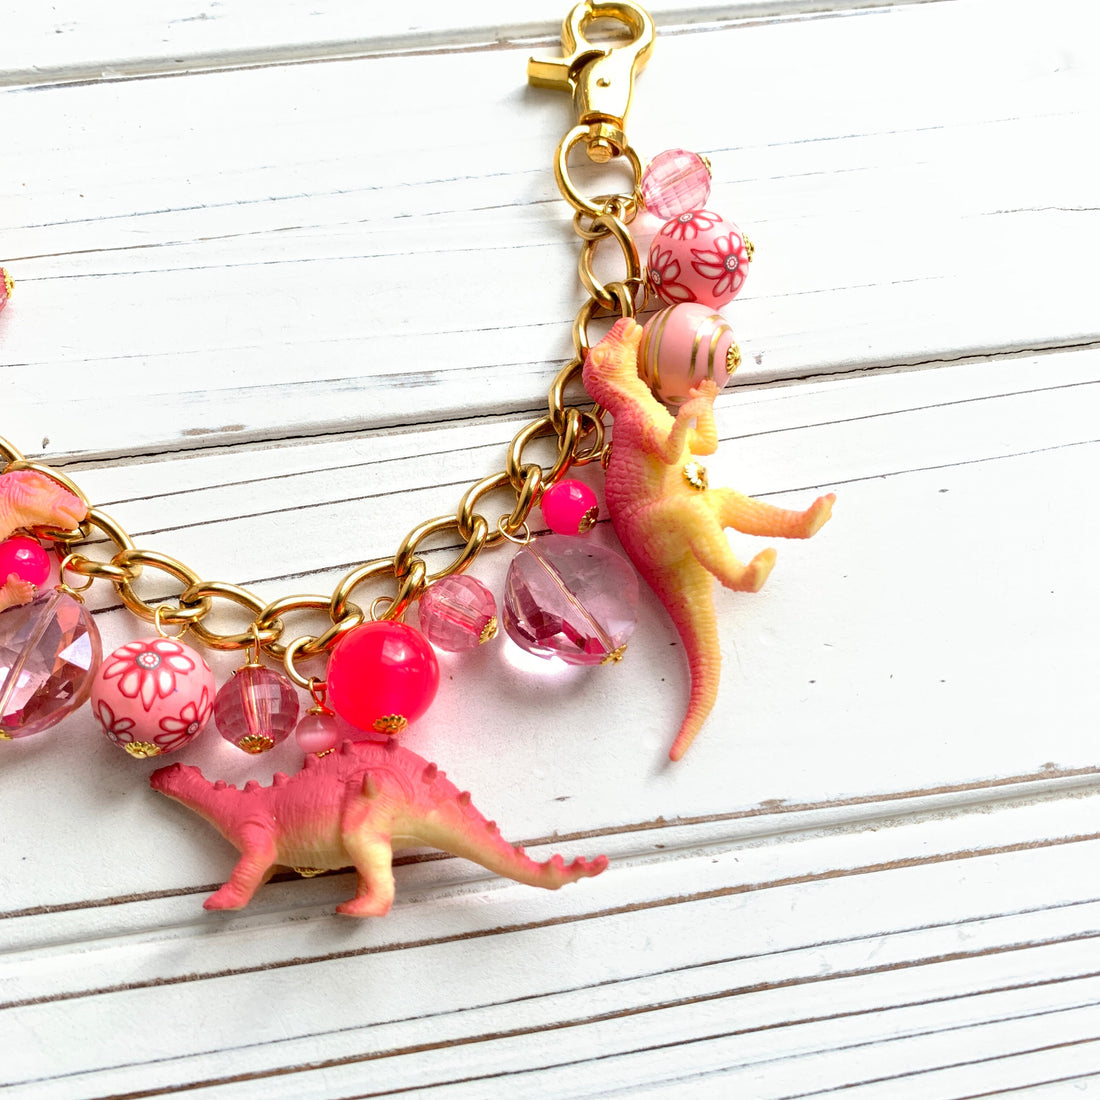 NEW DESIGN! Lenora Dame Pink Dinosaur Chain Bag Charm